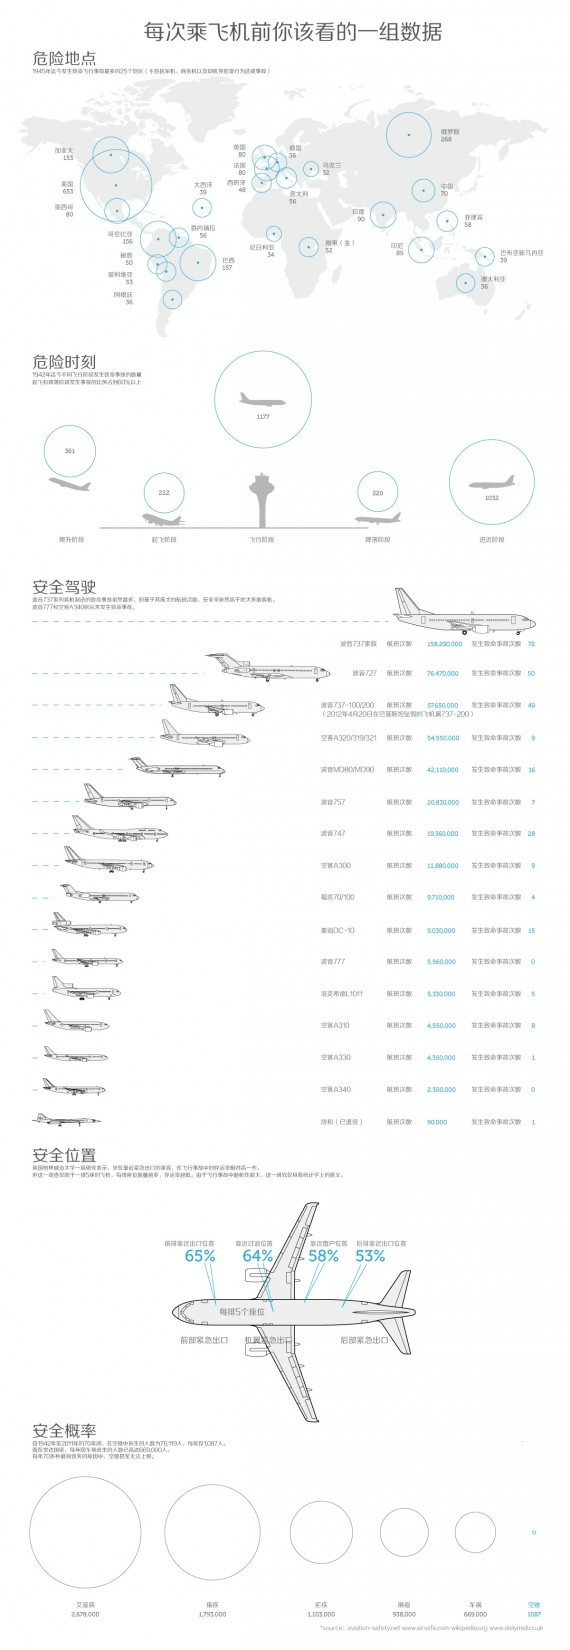 乘机必读：关于飞行事故的种种统计 看哪种飞机最安全(图)